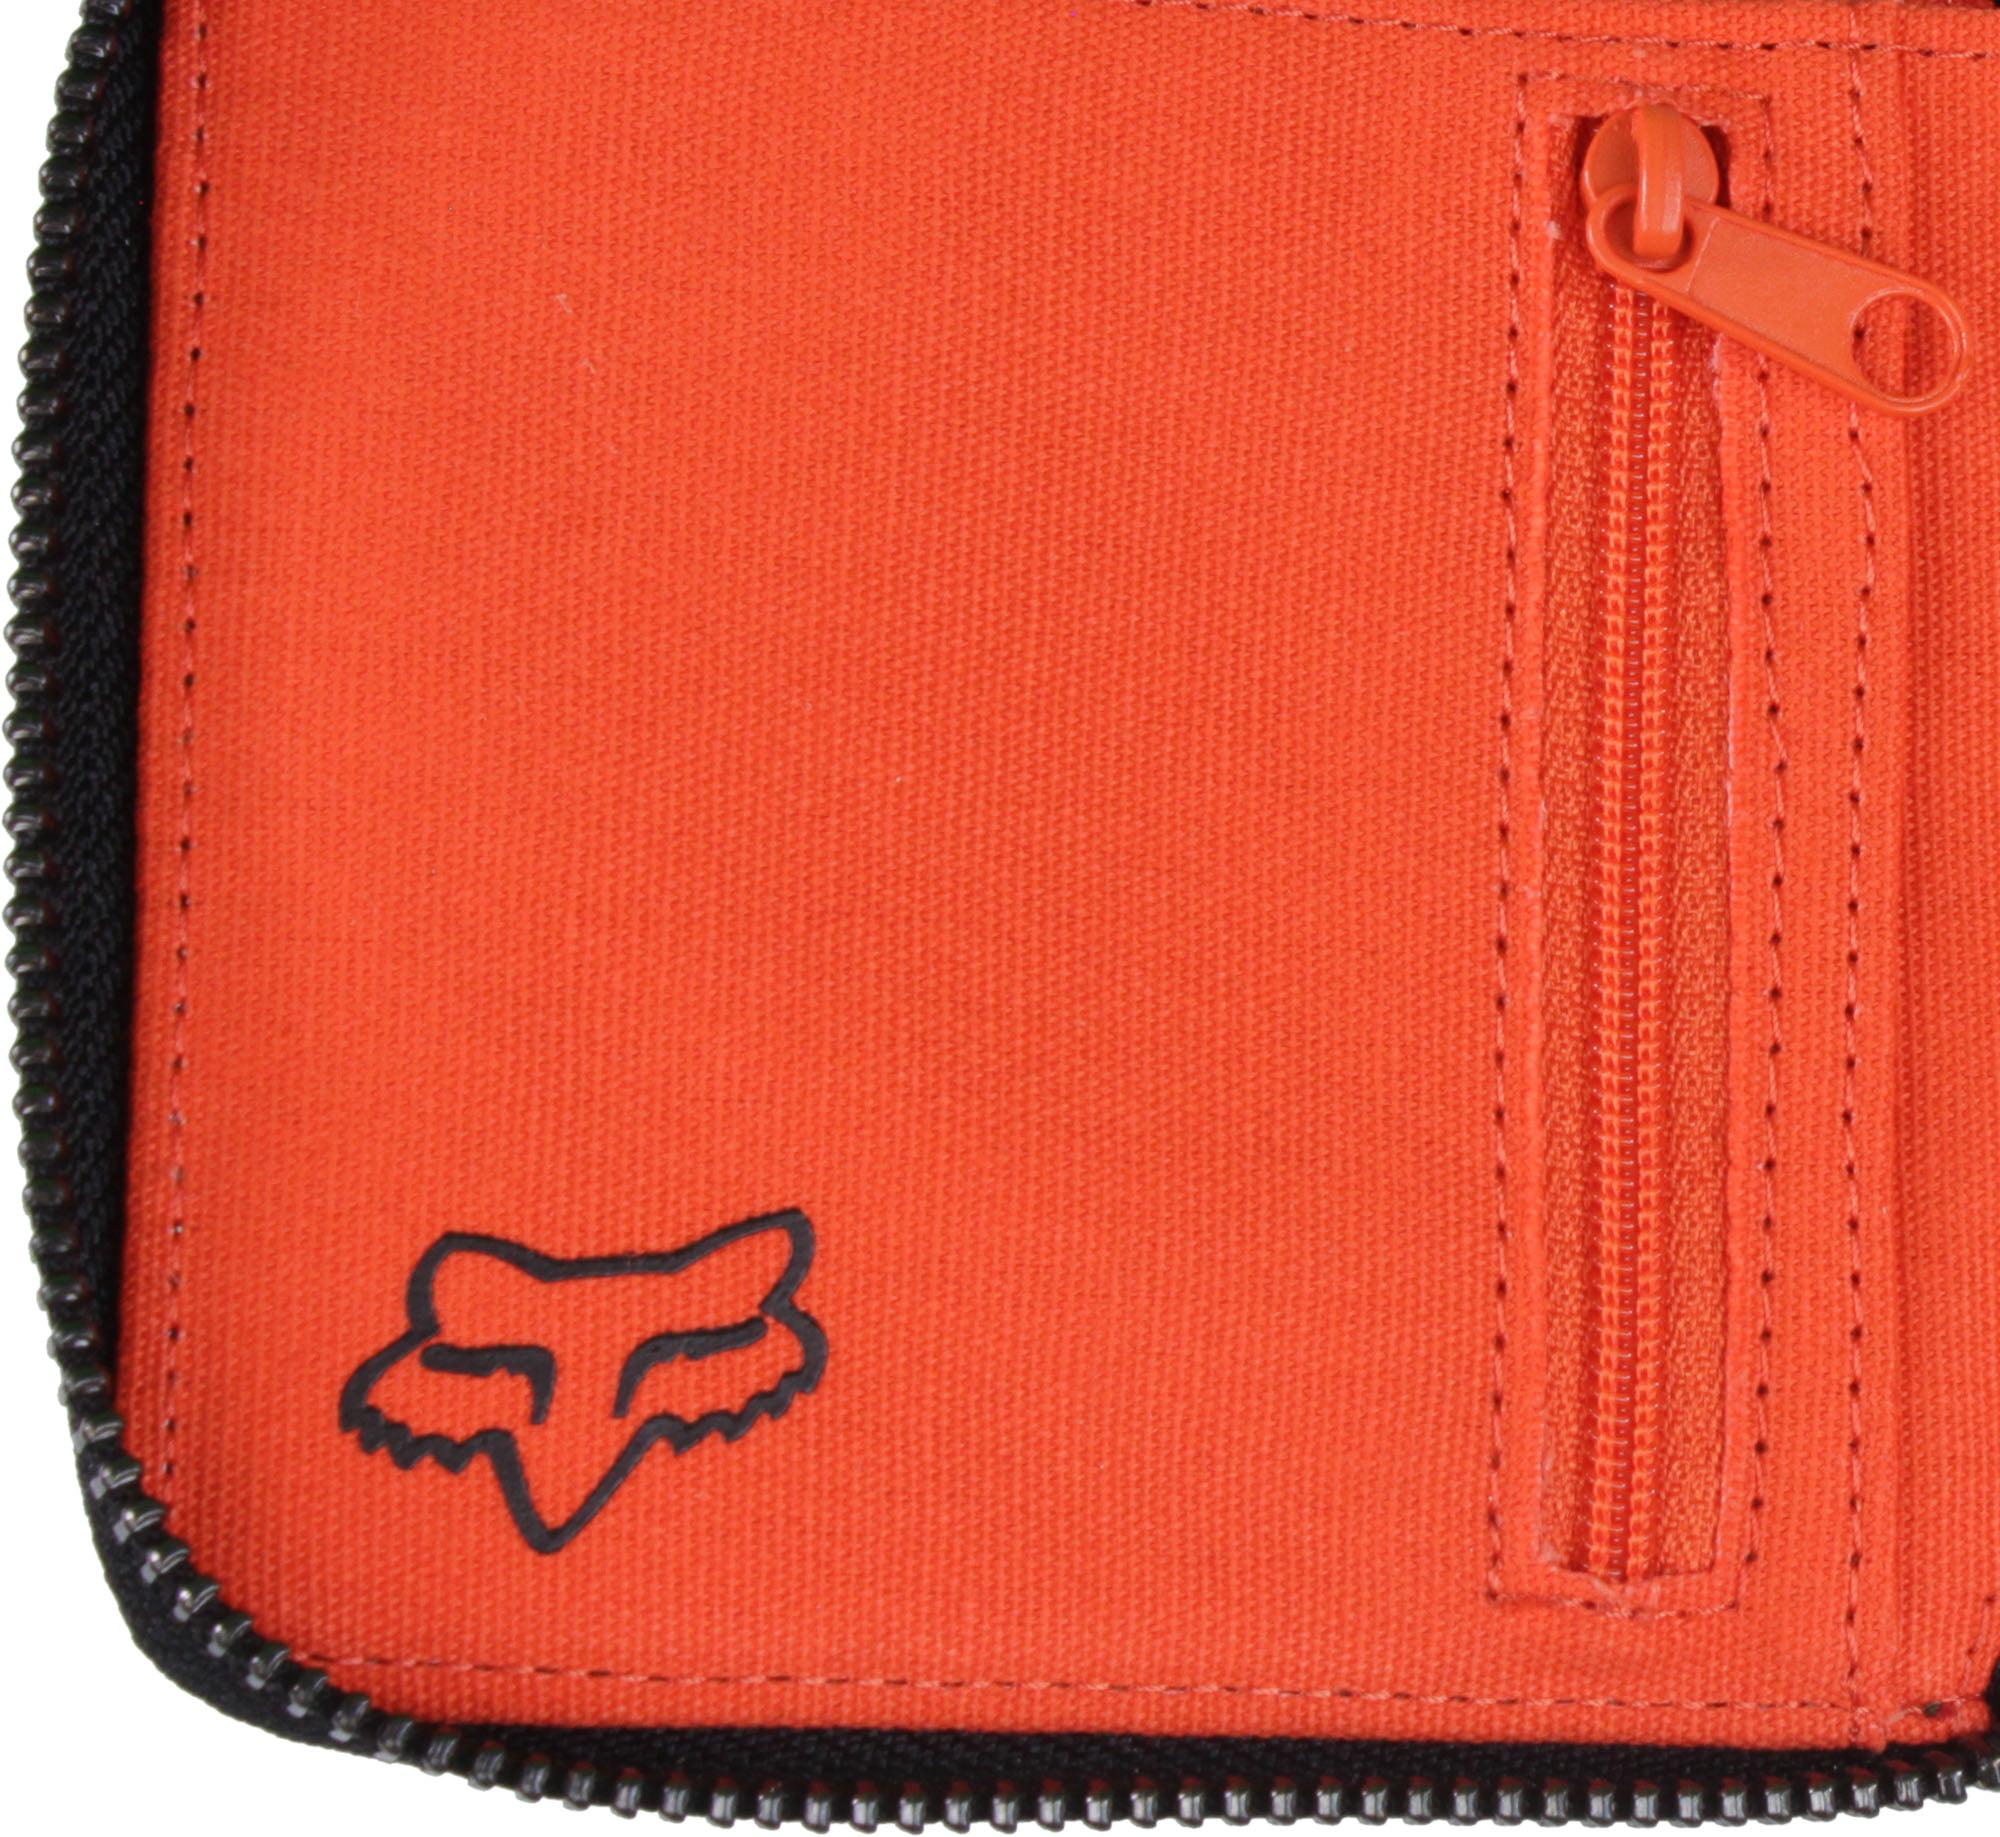 Fox Juniors Clarity Bowler Bag | Womens purses, Purses and handbags, Bags